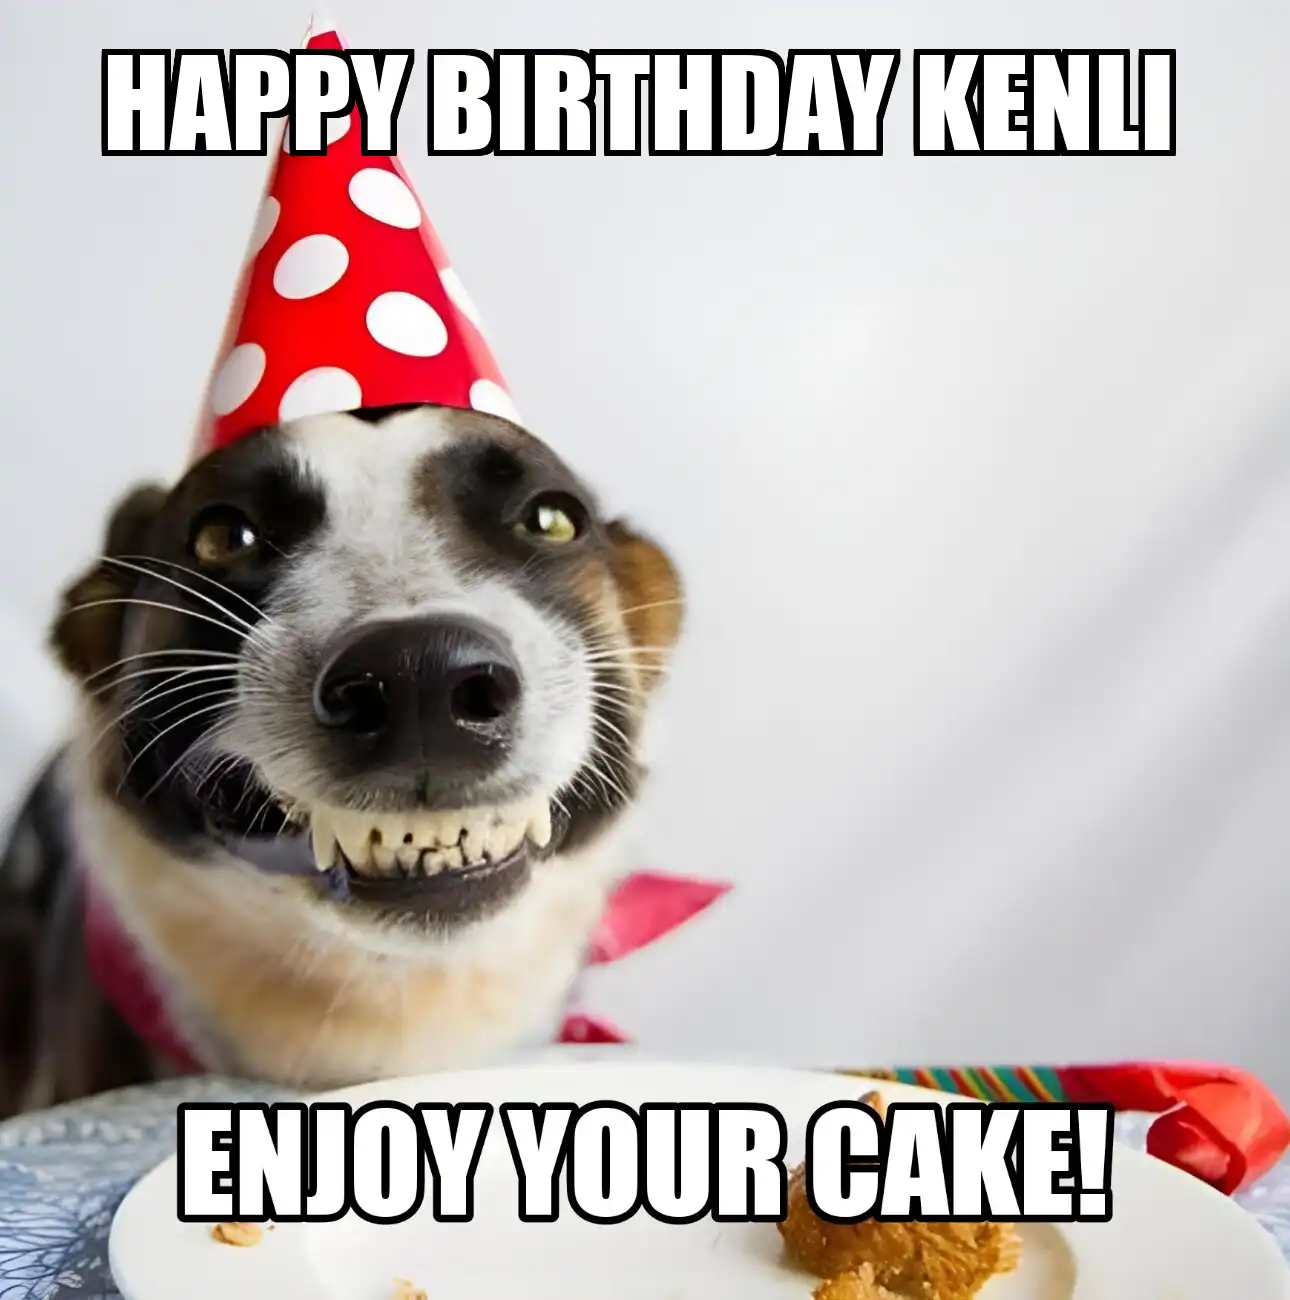 Happy Birthday Kenli Enjoy Your Cake Dog Meme